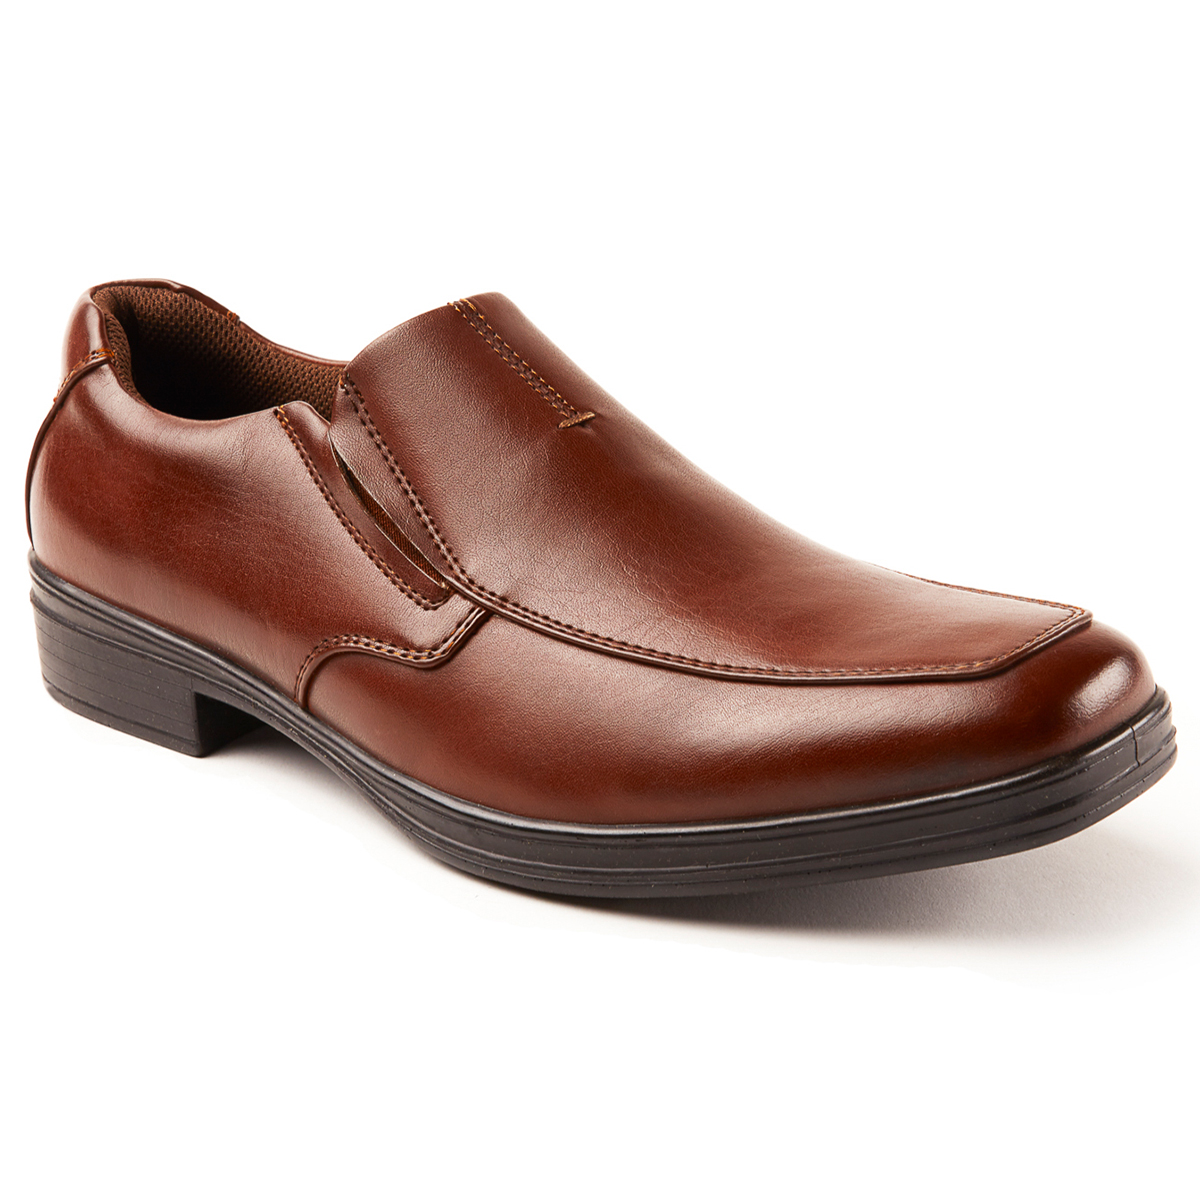 Deer Stags Men's Fit Slip-On Loafer Shoes - Brown, 11.5